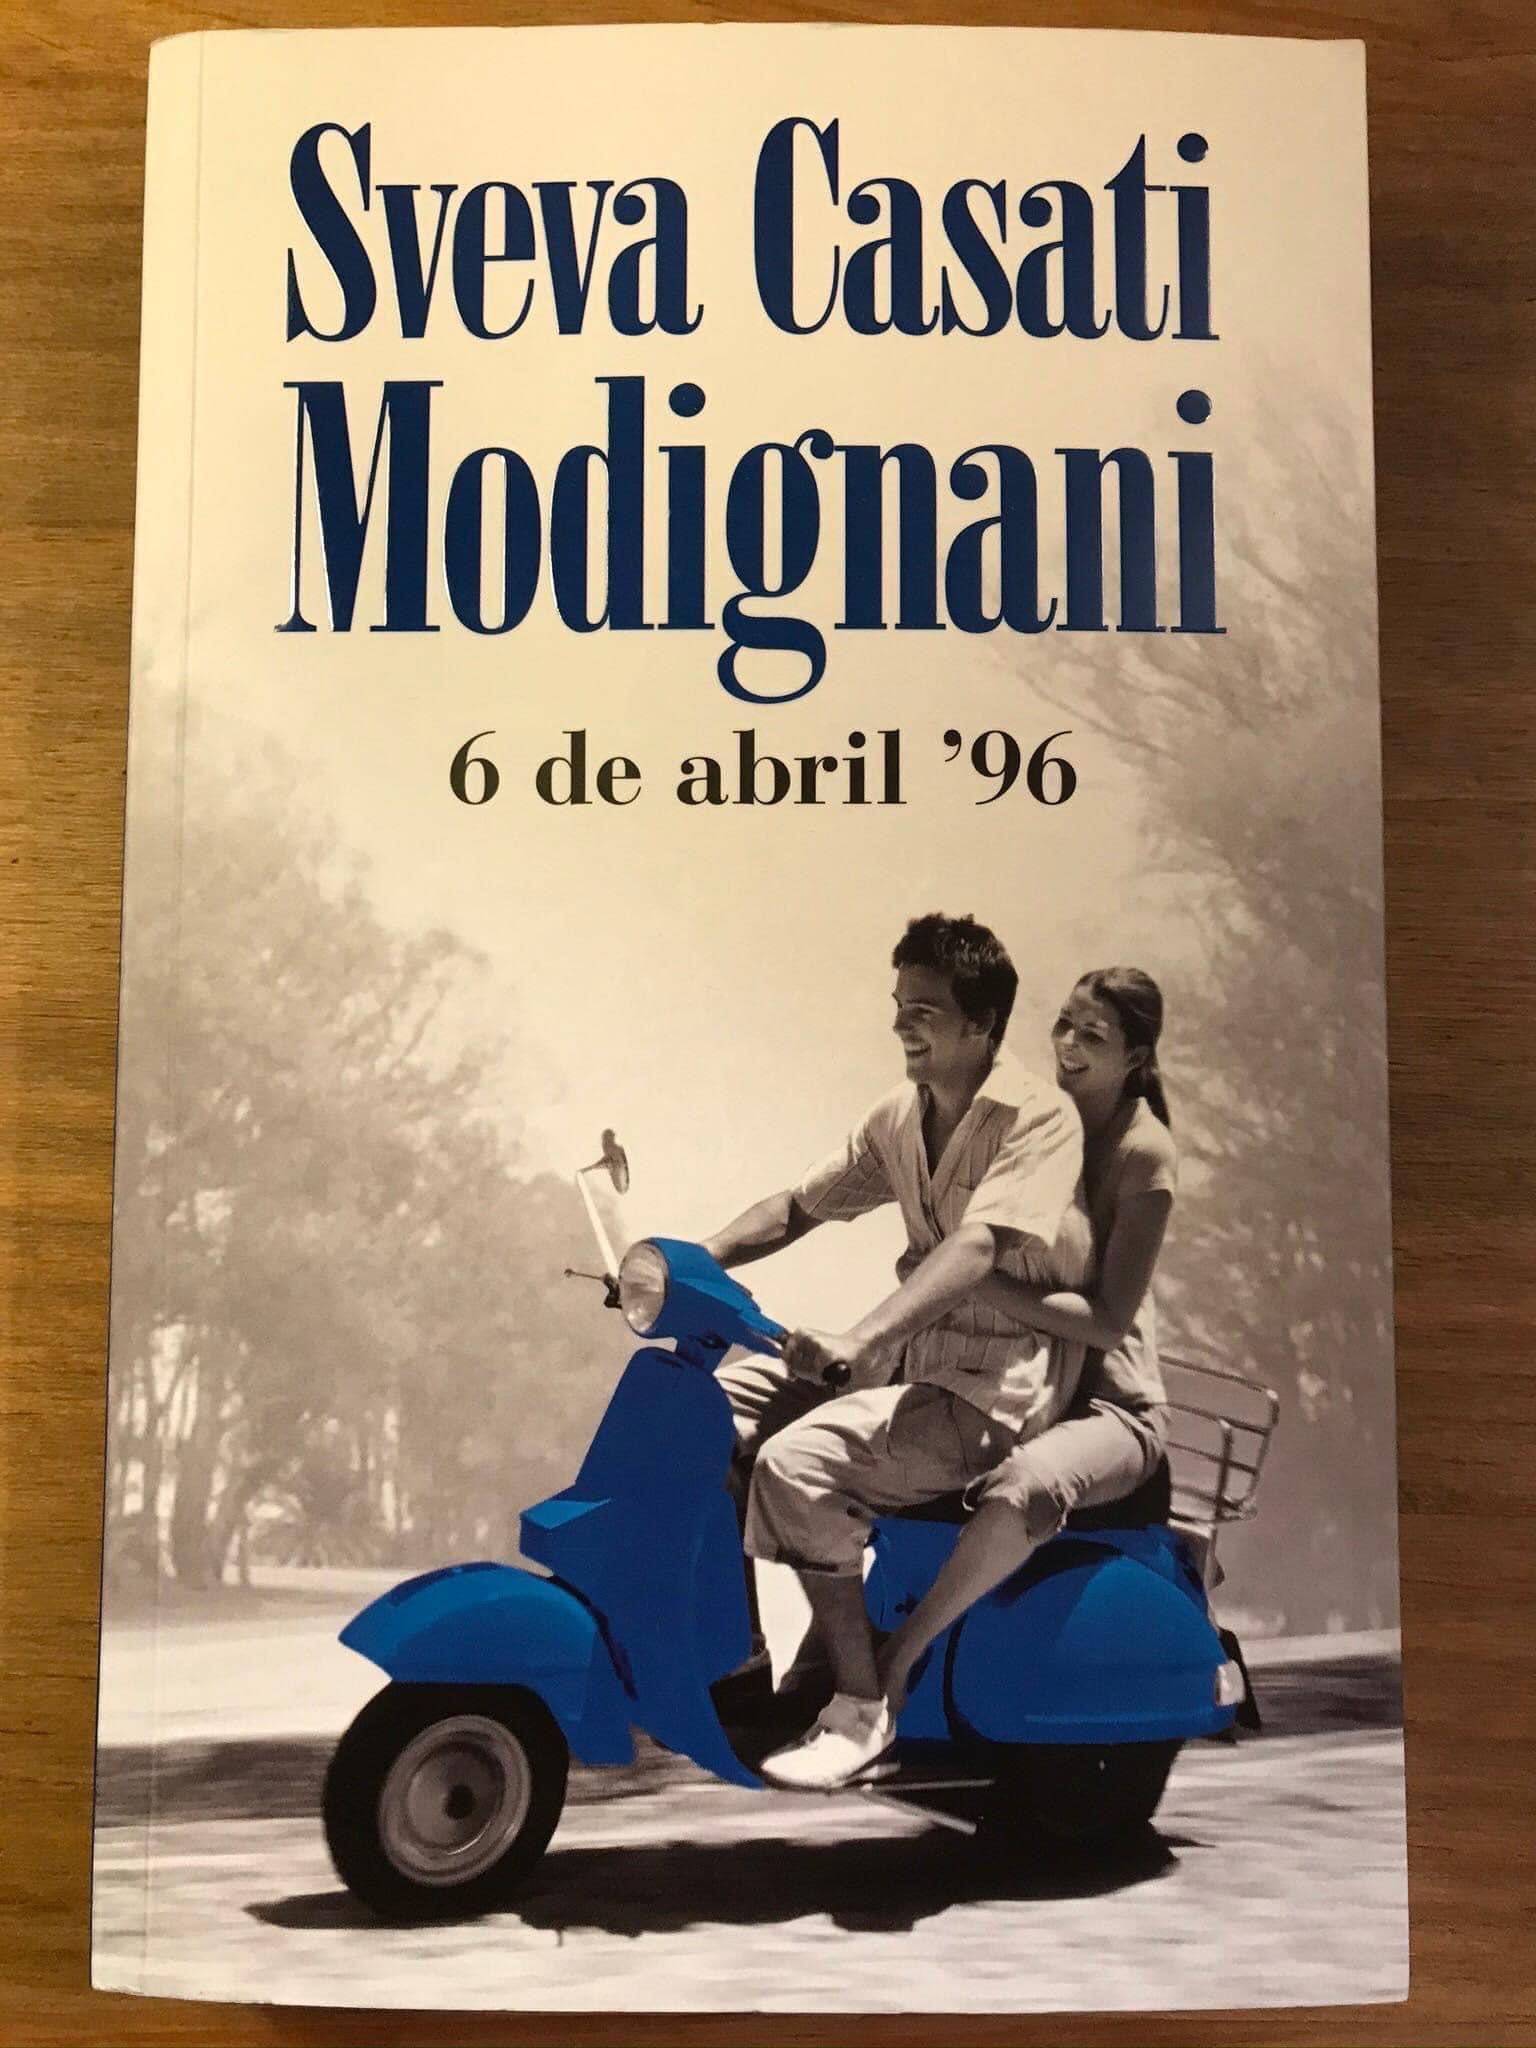 6 de abril 96 - Sveva Casati Modignani (portes grátis)